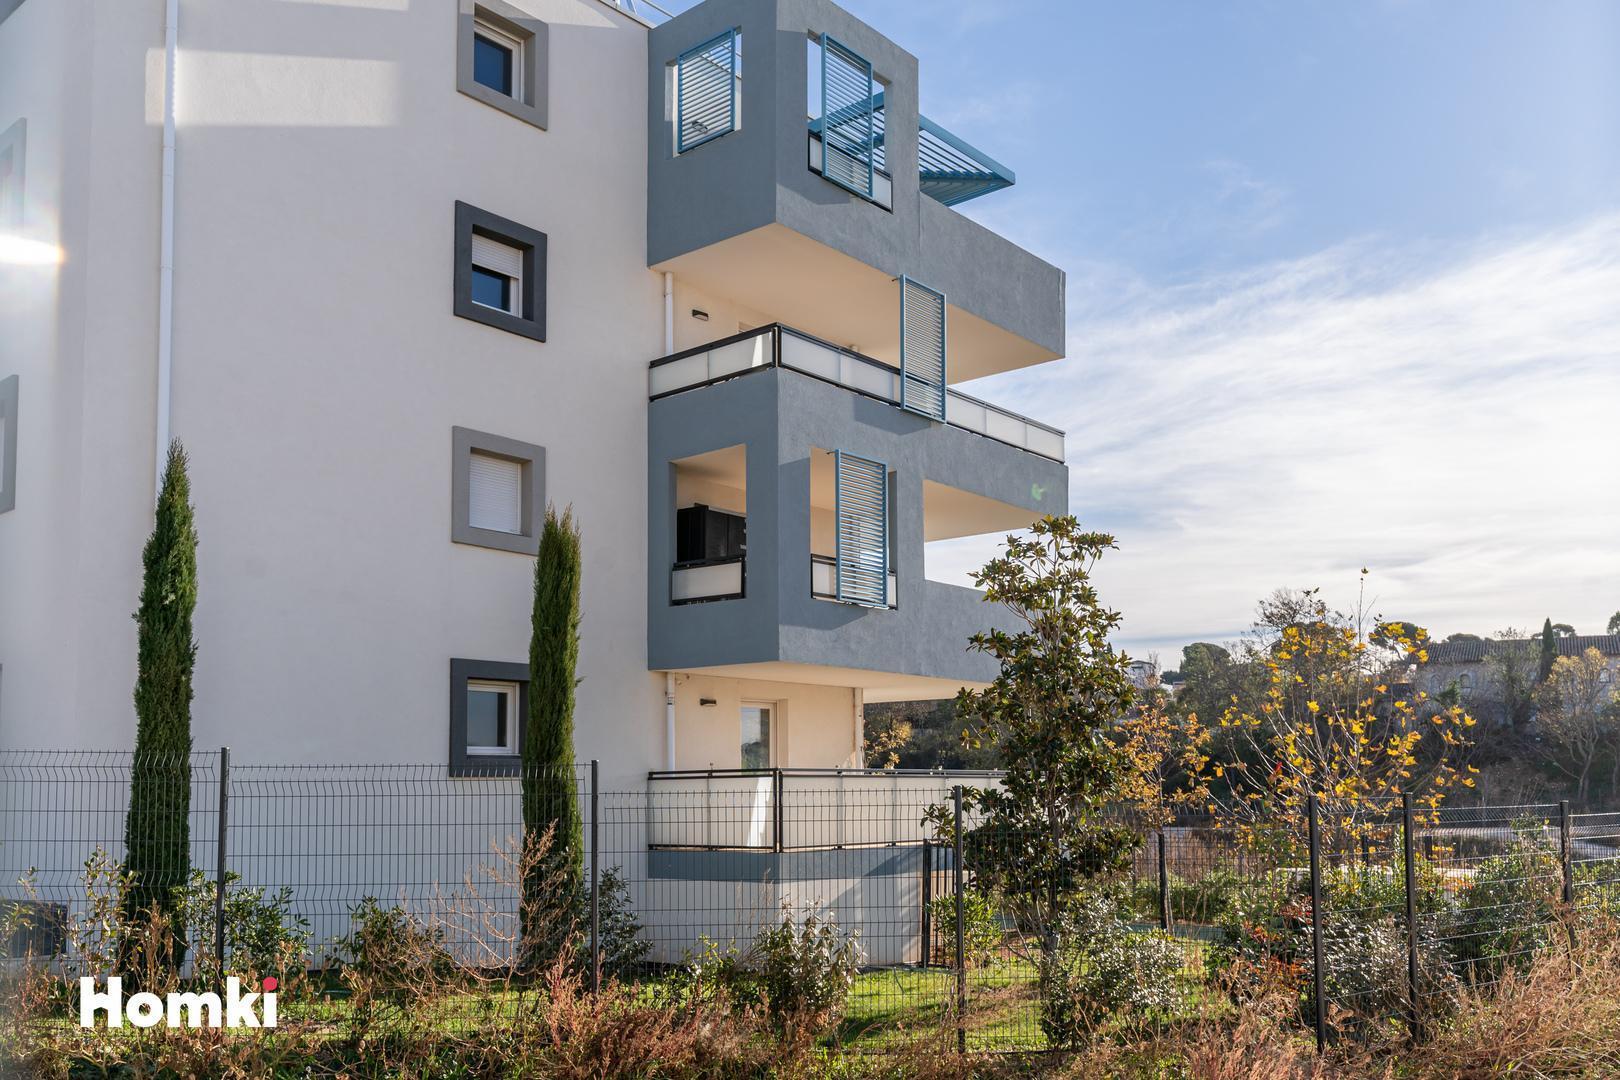 Homki - Vente Appartement  de 63.0 m² à Marseille 13013